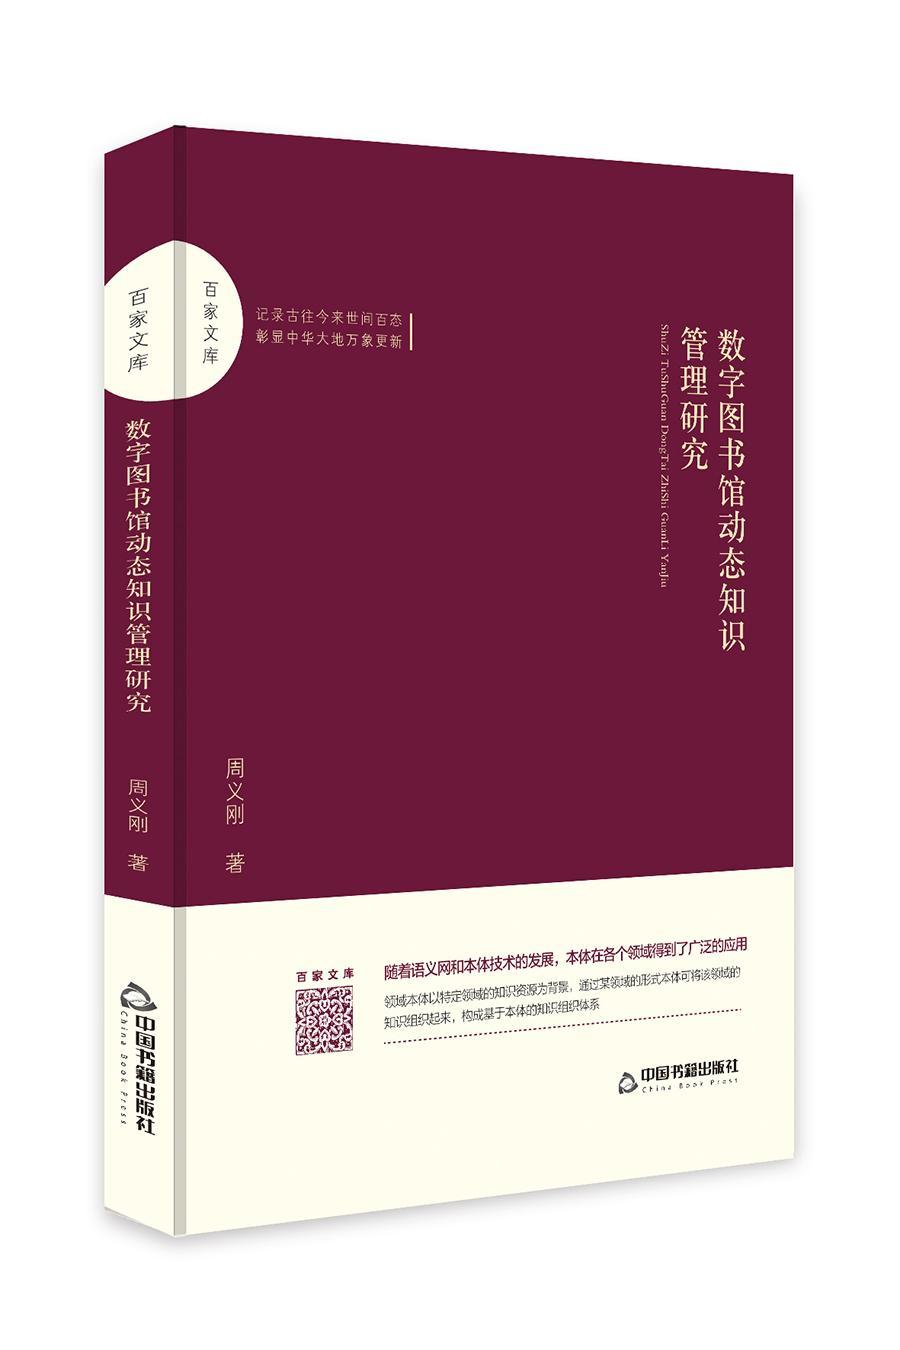 RT69包邮 数字图书馆动态知识管理研究中国书籍出版社社会科学图书书籍